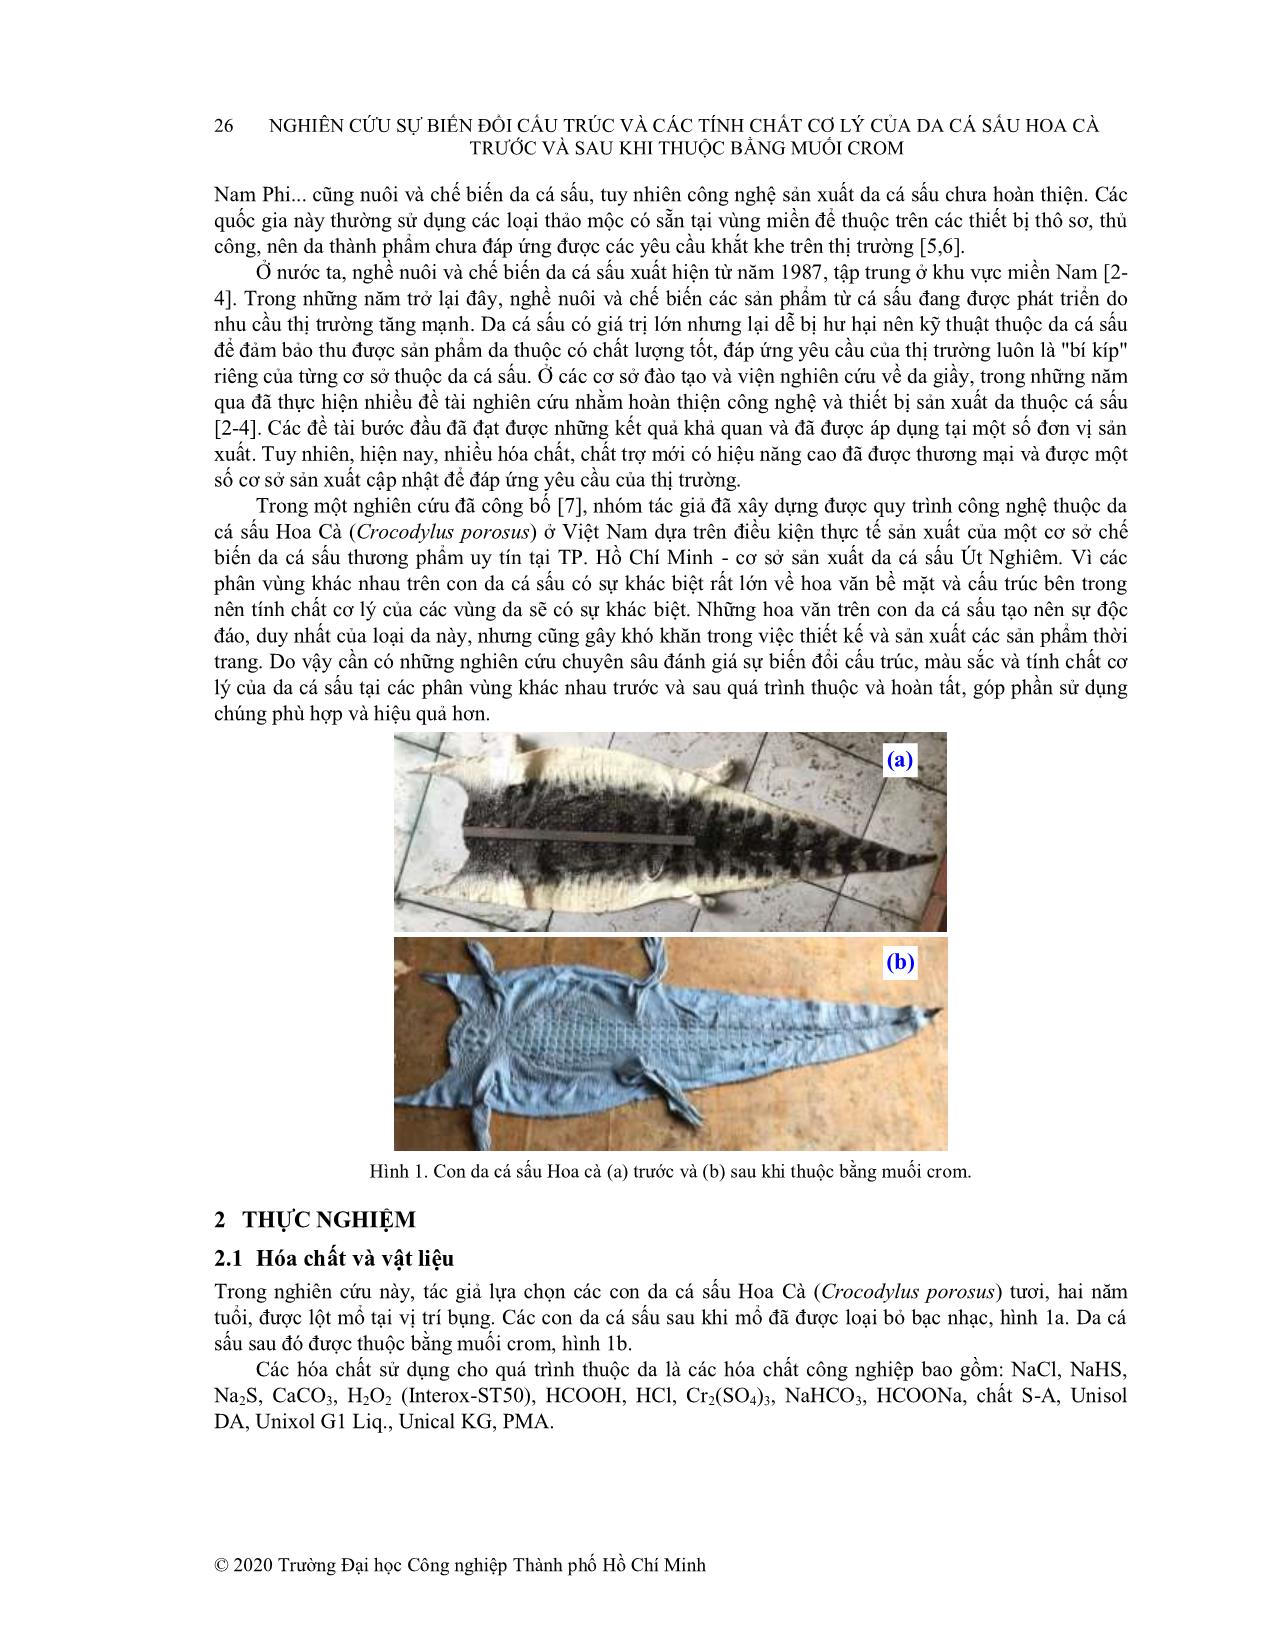 Nghiên cứu sự biến đổi cấu trúc và các tính chất cơ lý của da cá sấu hoa cà trước và sau khi thuộc bằng muối Crom trang 2